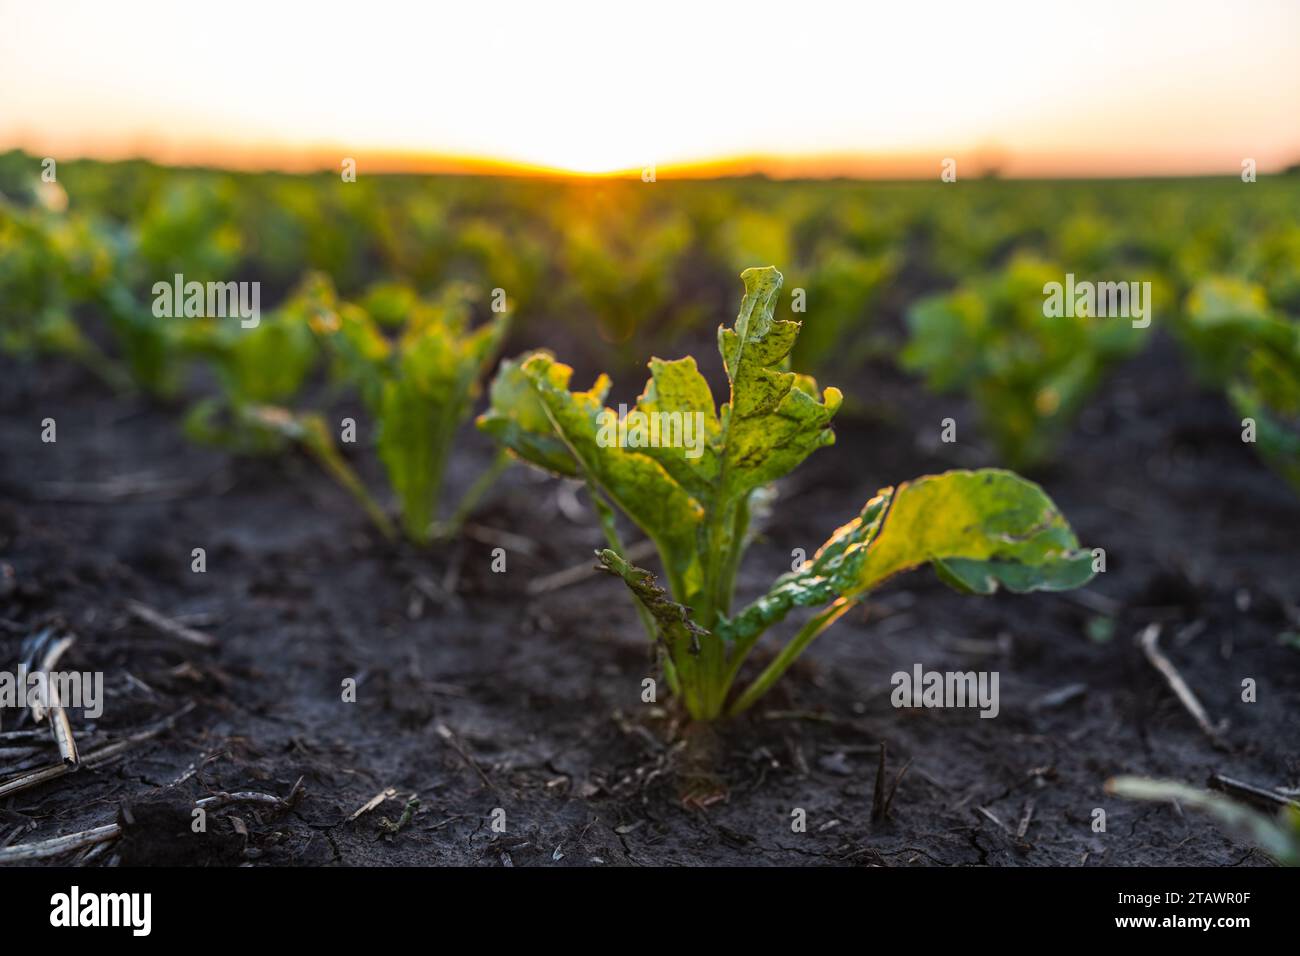 Les betteraves à sucre vertes germent sur le champ dans un coucher de soleil. Rangées de jeunes racines de betterave sucrière sur un champ agraire. Betteraves poussant sur le terrain agricole Banque D'Images